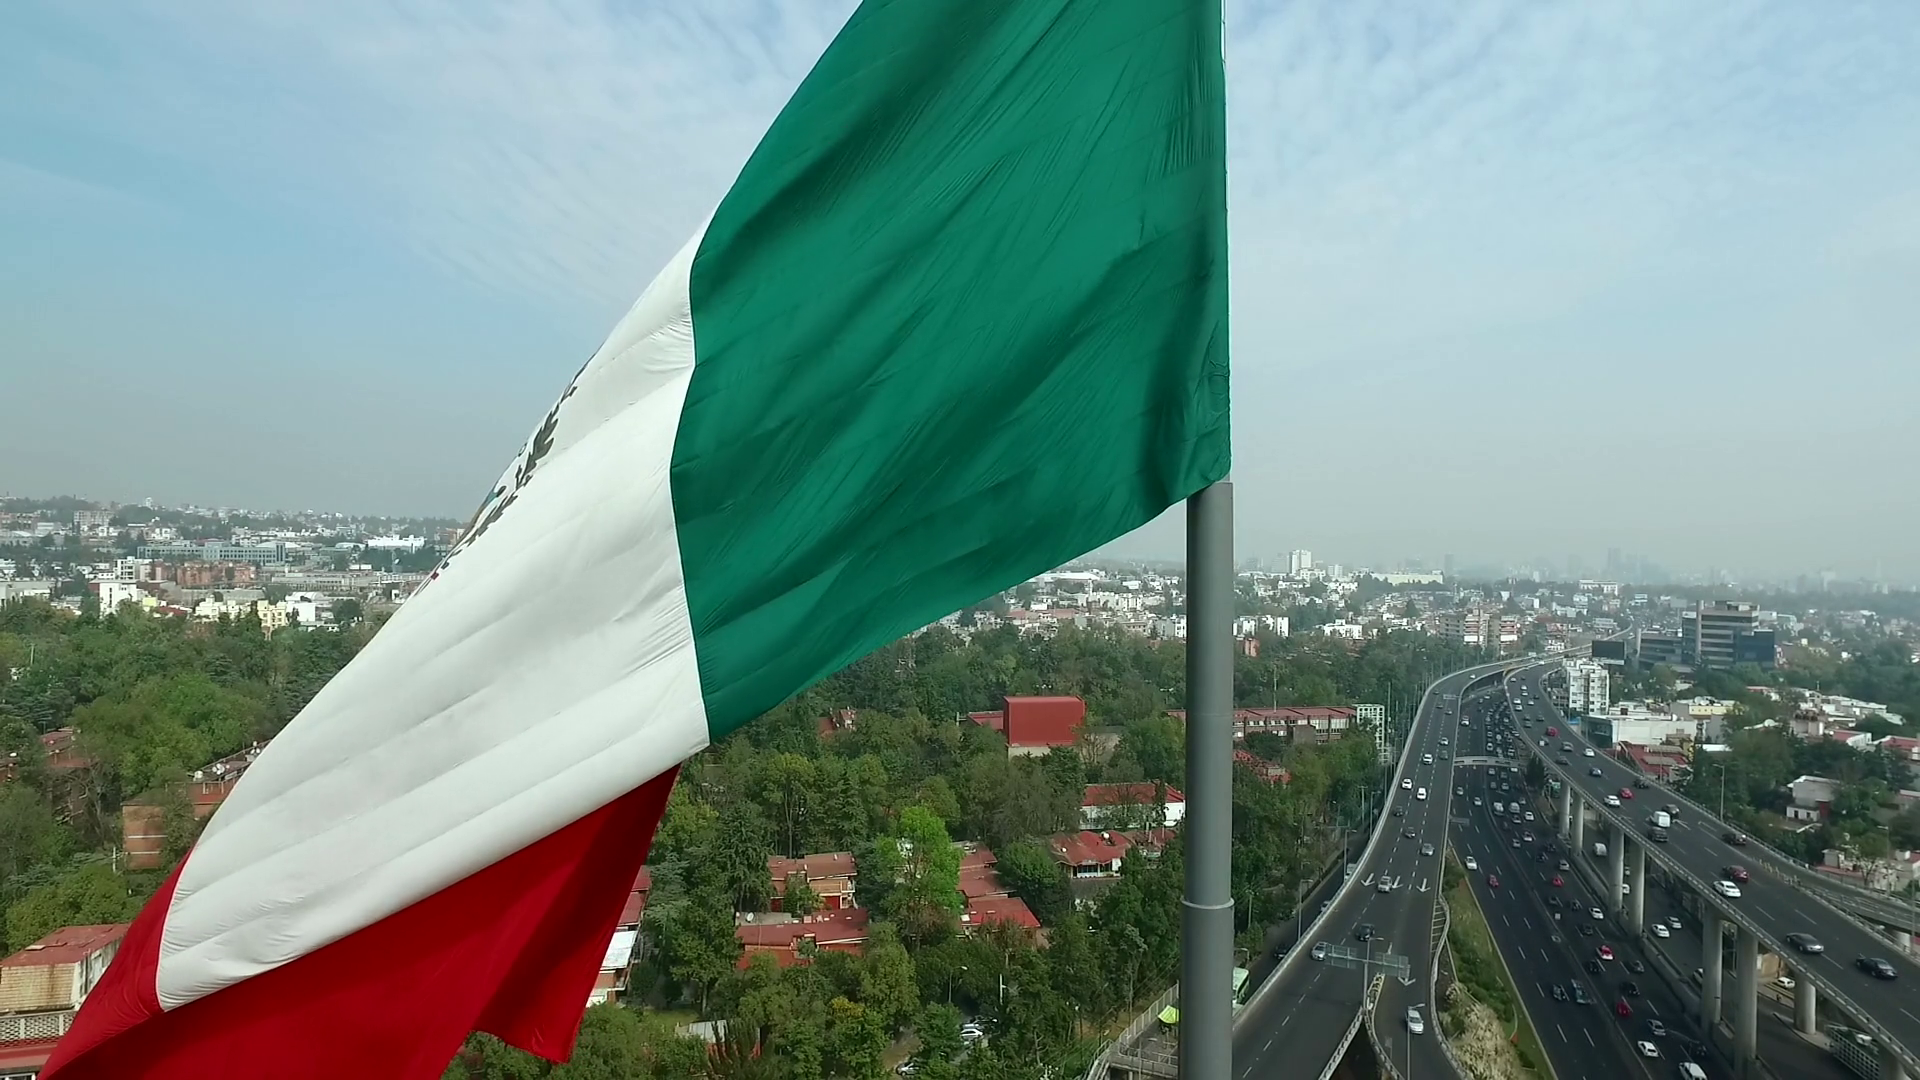 Bandera De Mexico Hd , HD Wallpaper & Backgrounds